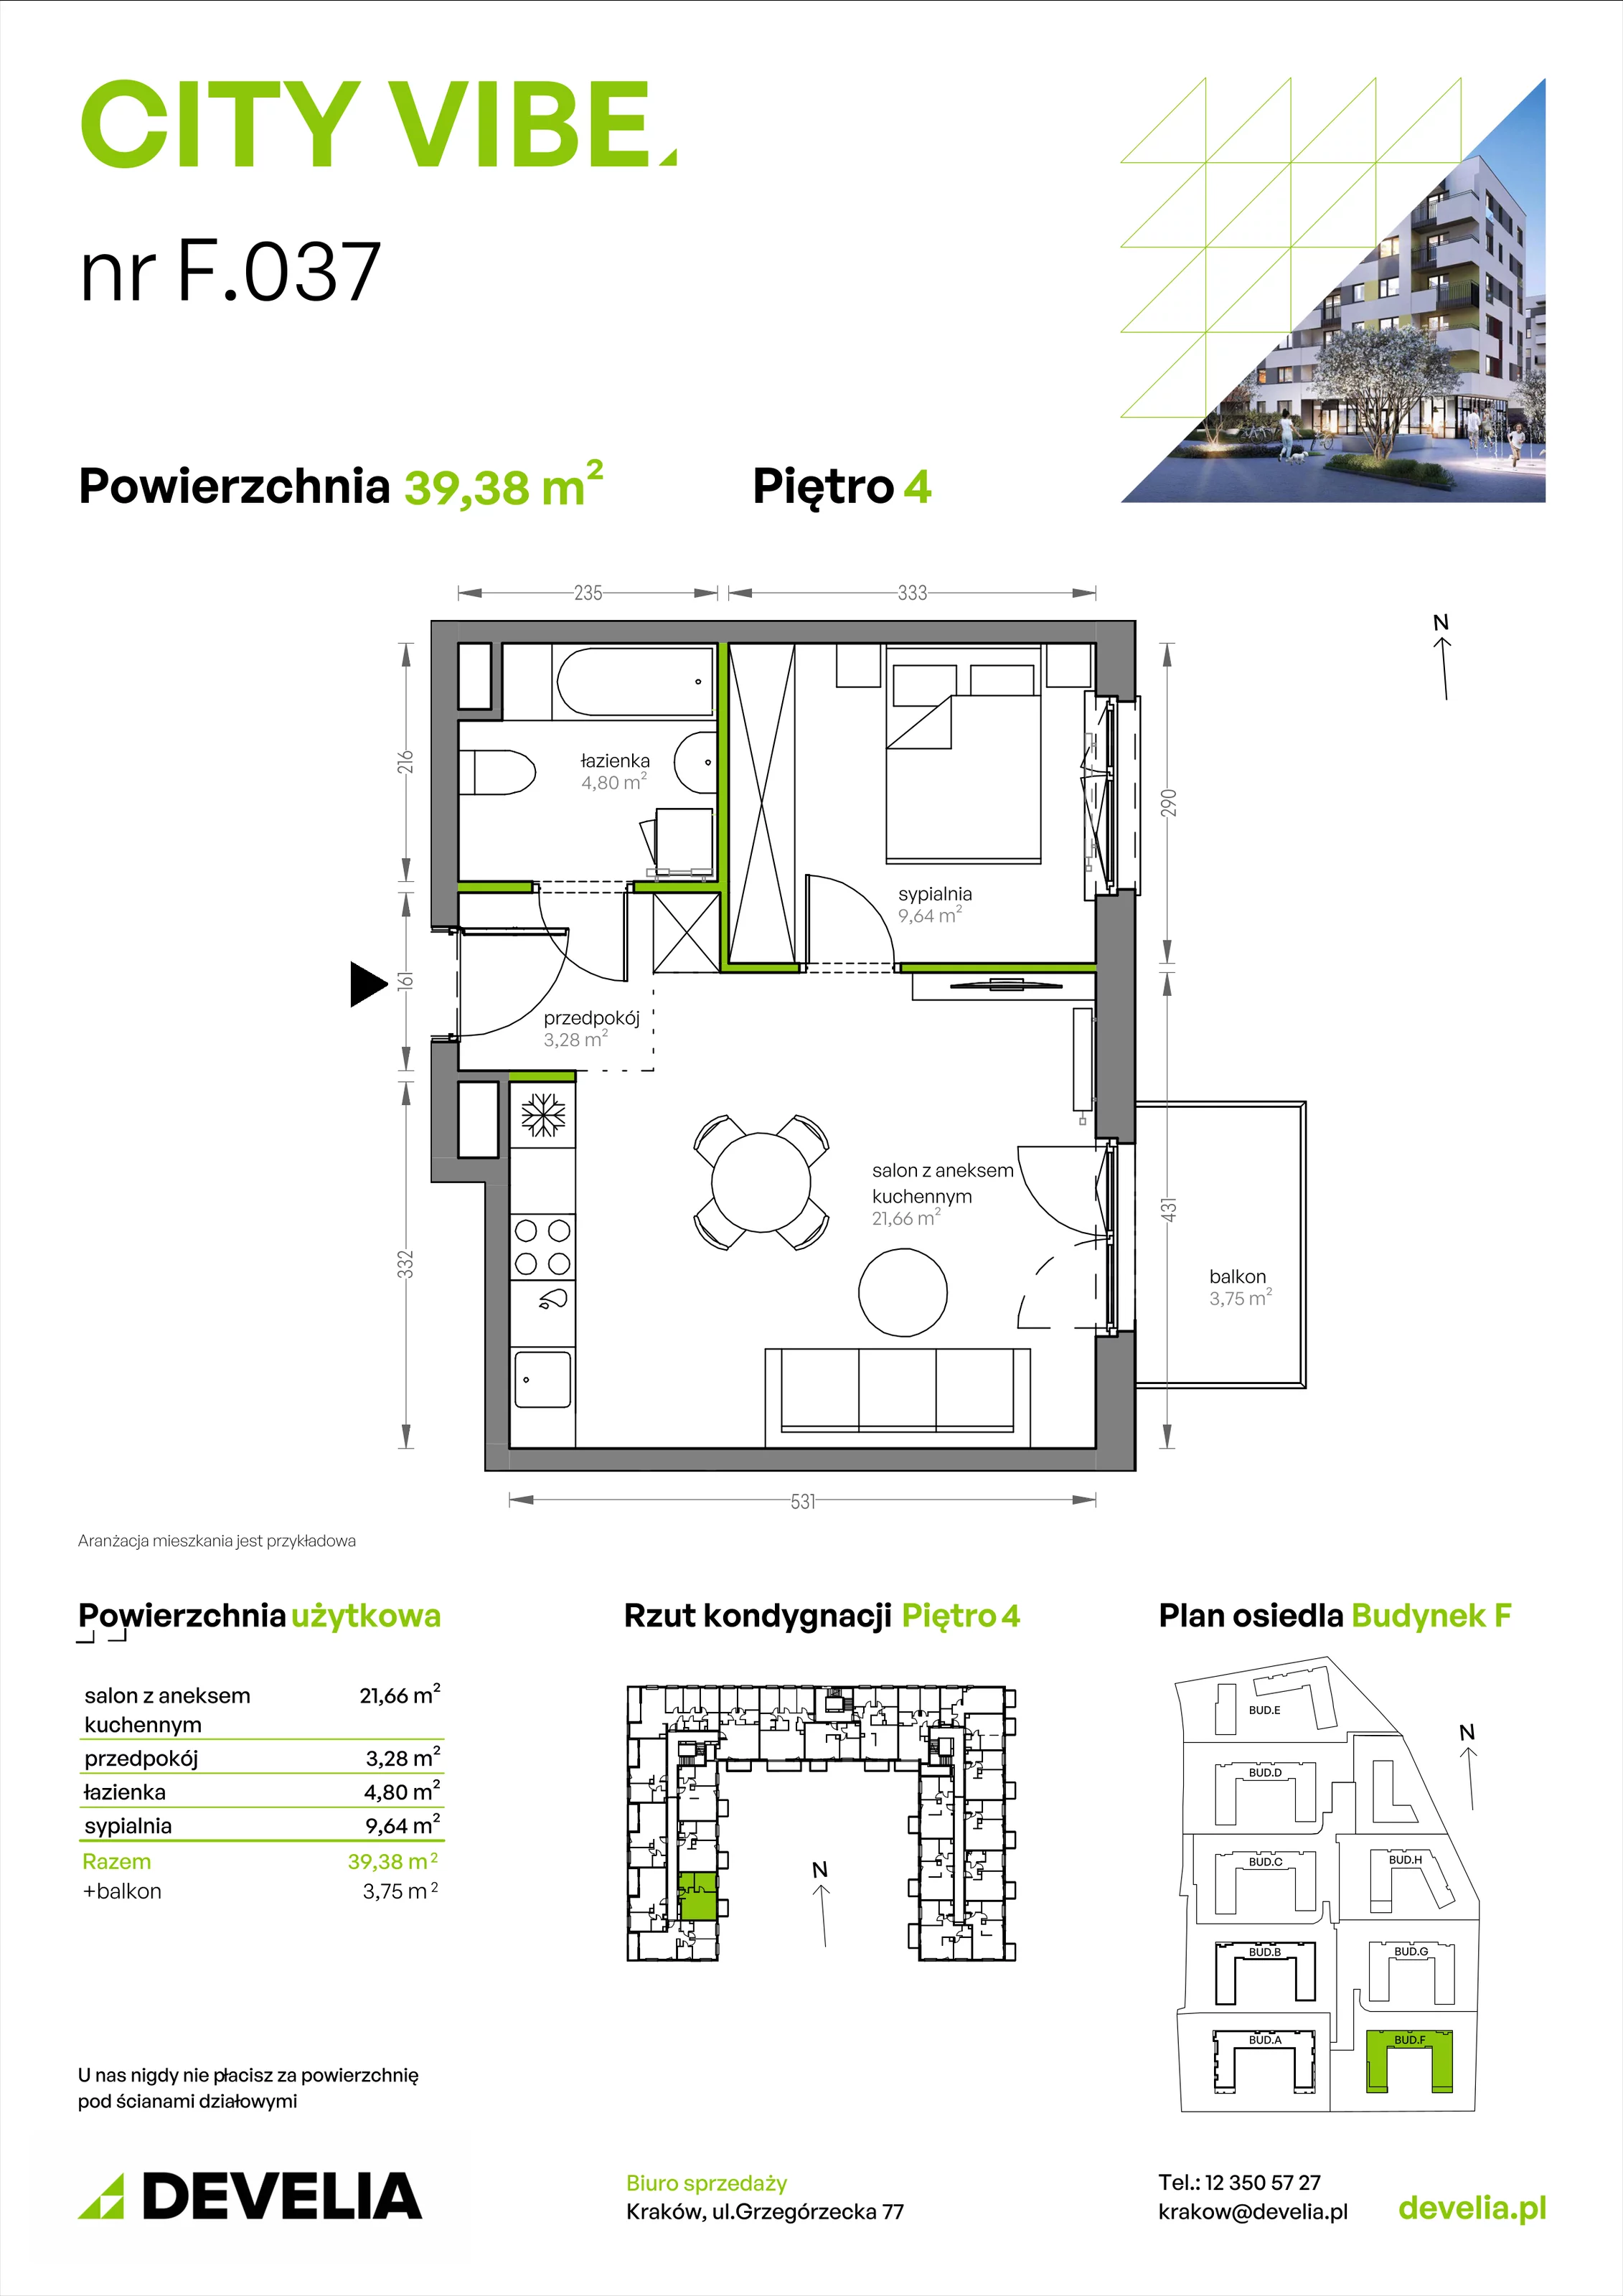 Mieszkanie 39,38 m², piętro 4, oferta nr F/037, City Vibe etap V, Kraków, Podgórze, Płaszów, ul. Myśliwska 68